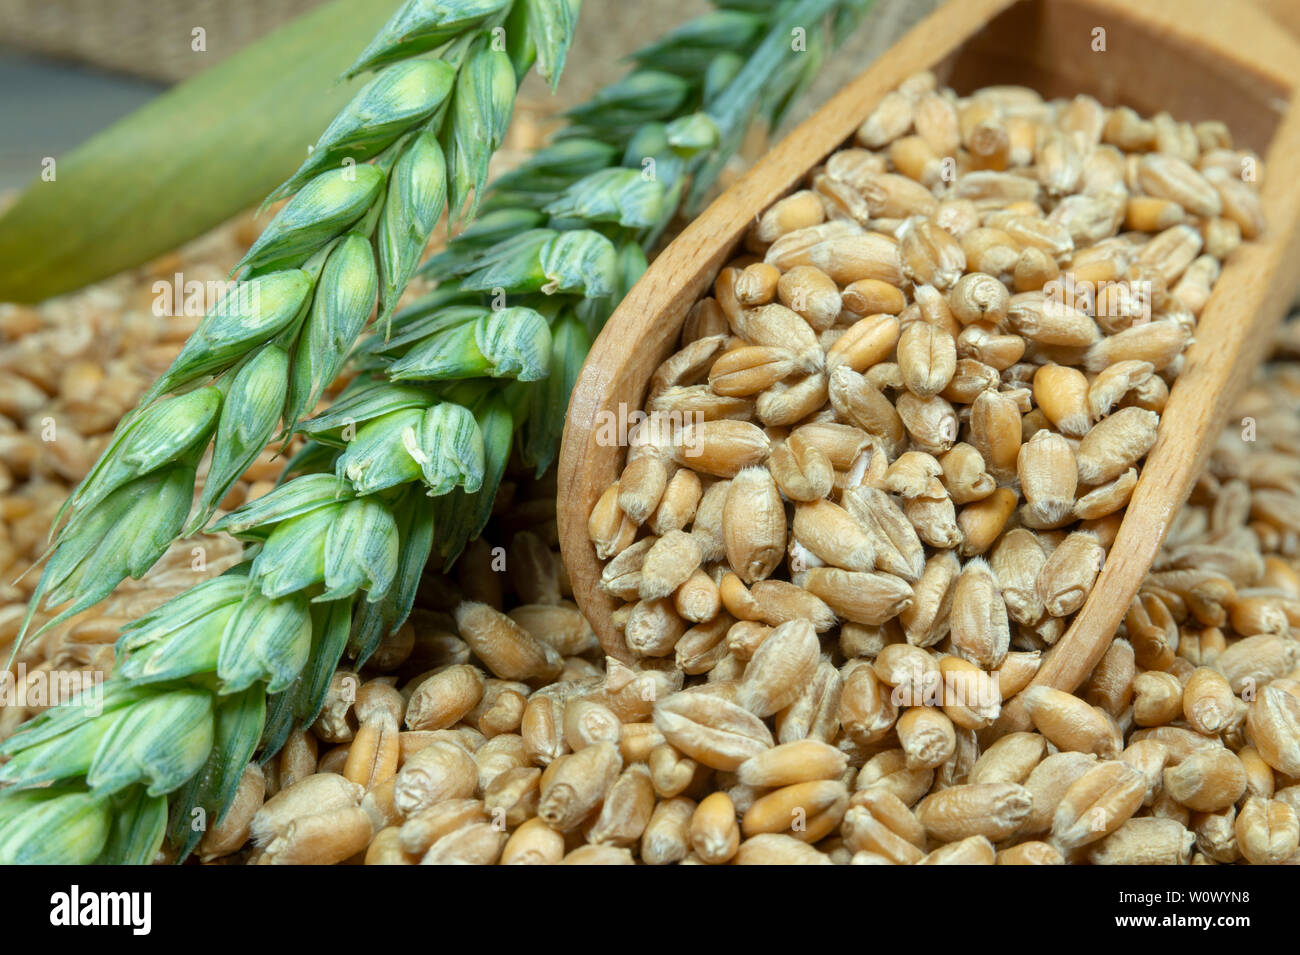 Les semences de blé se répandre à partir d'une pelle en bois avec des mûres et des oreilles neuves de blé vert dans une vue en gros, alimentation saine et nouvelle moisson concept avec c Banque D'Images